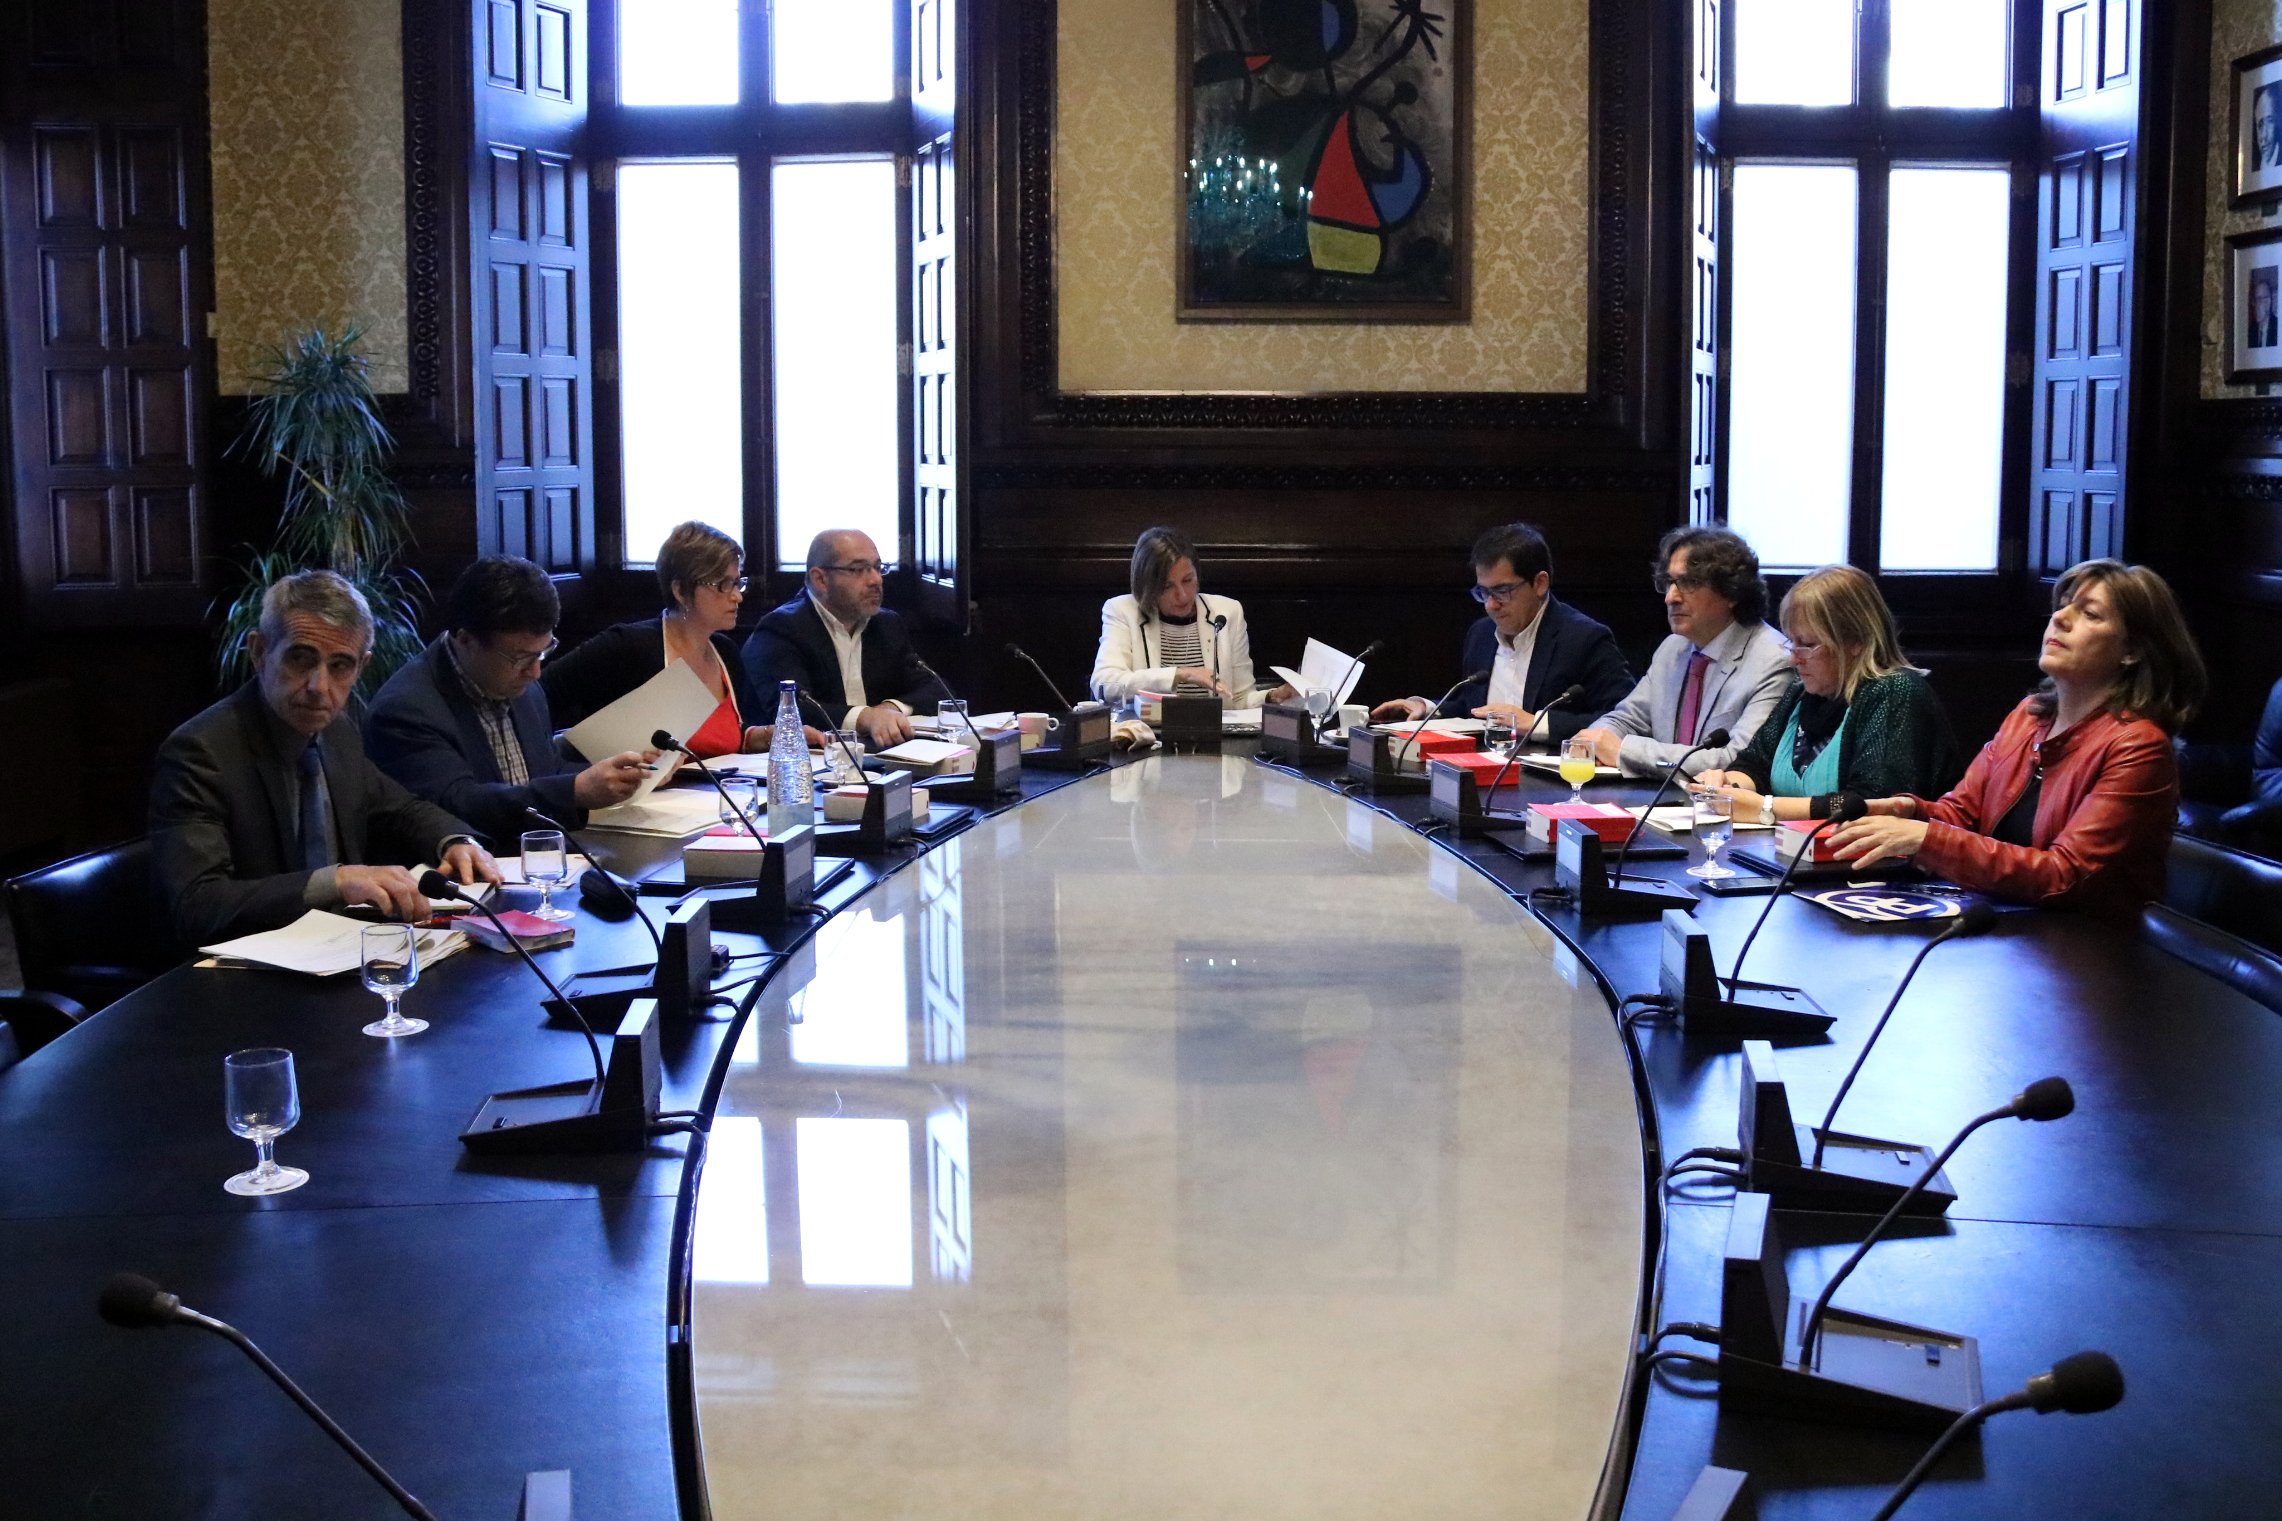 Adeslas rescindeix l'assegurança del Parlament per la situació política